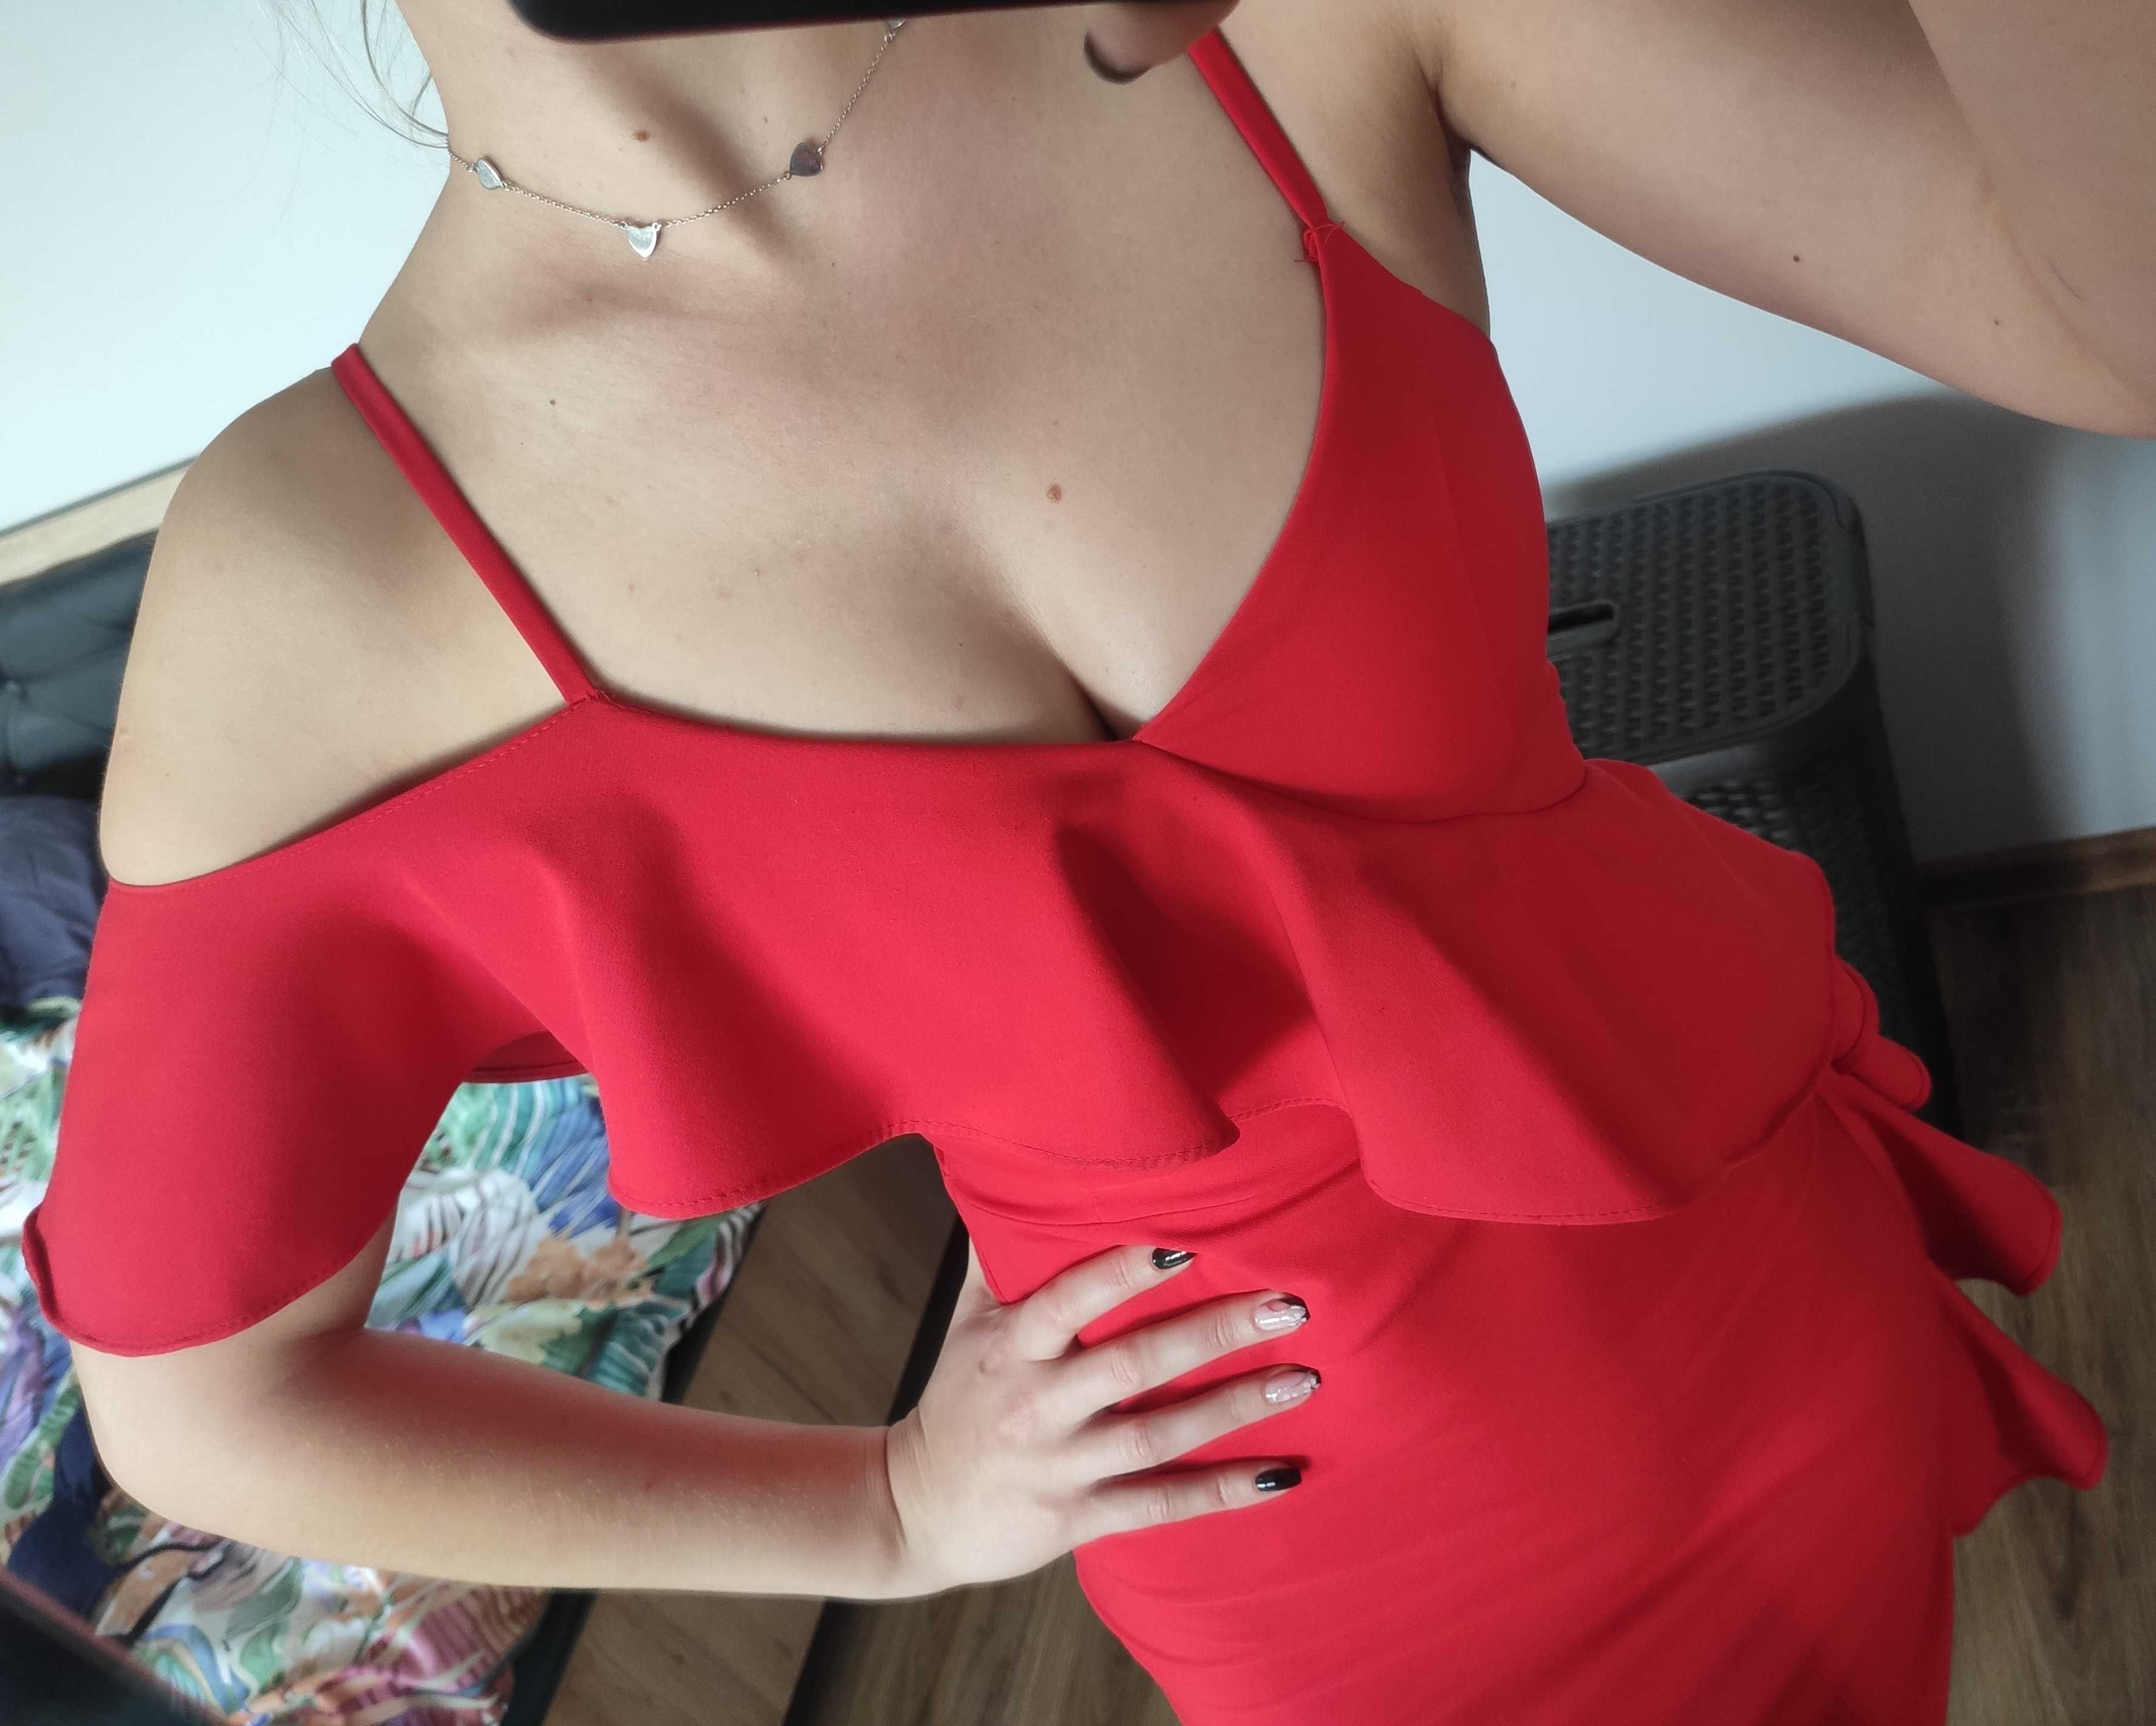 Czerwona sukienka hiszpanka